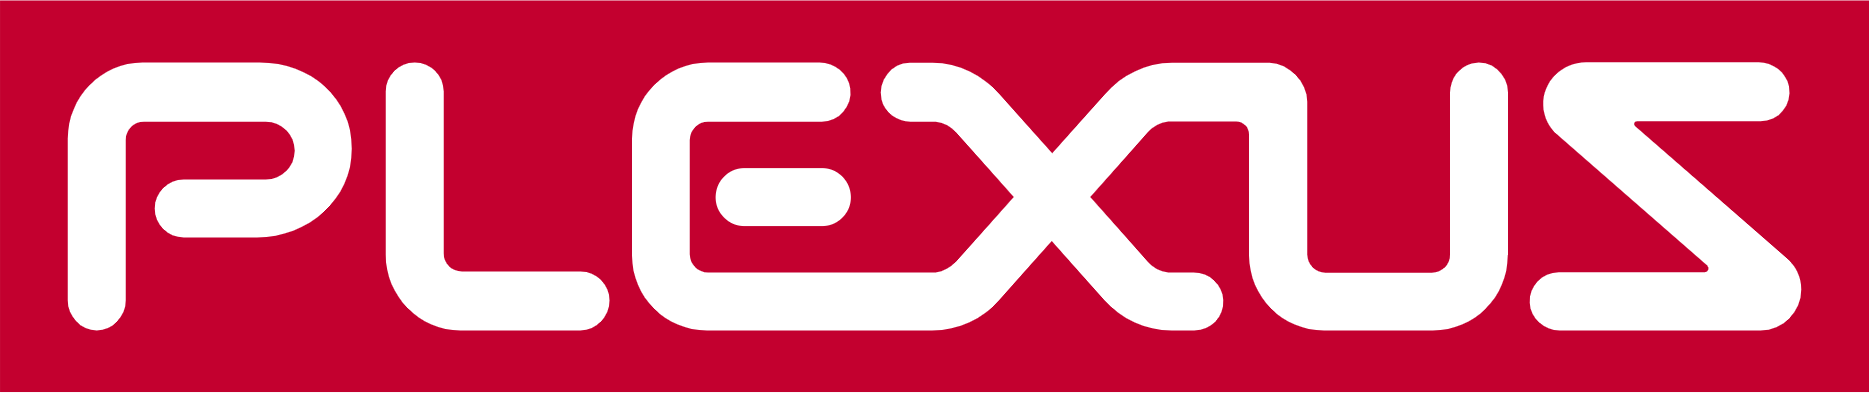 Plexus logo large (transparent PNG)